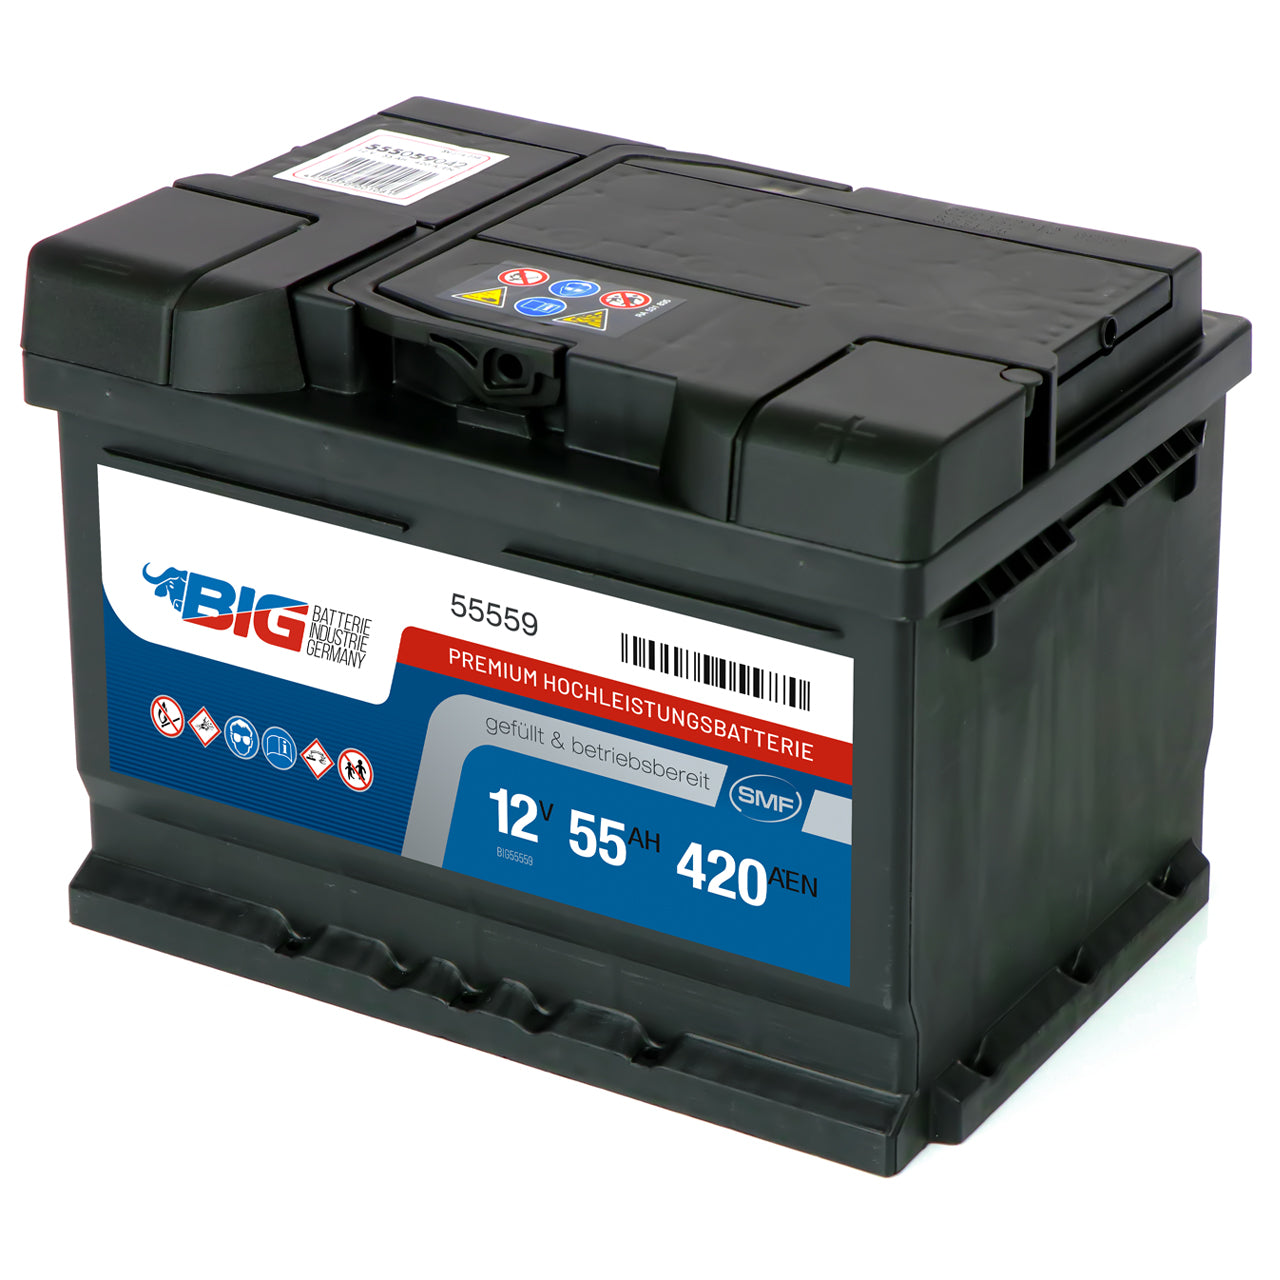 BIG Autobatterie 12V 55Ah DIN 55559